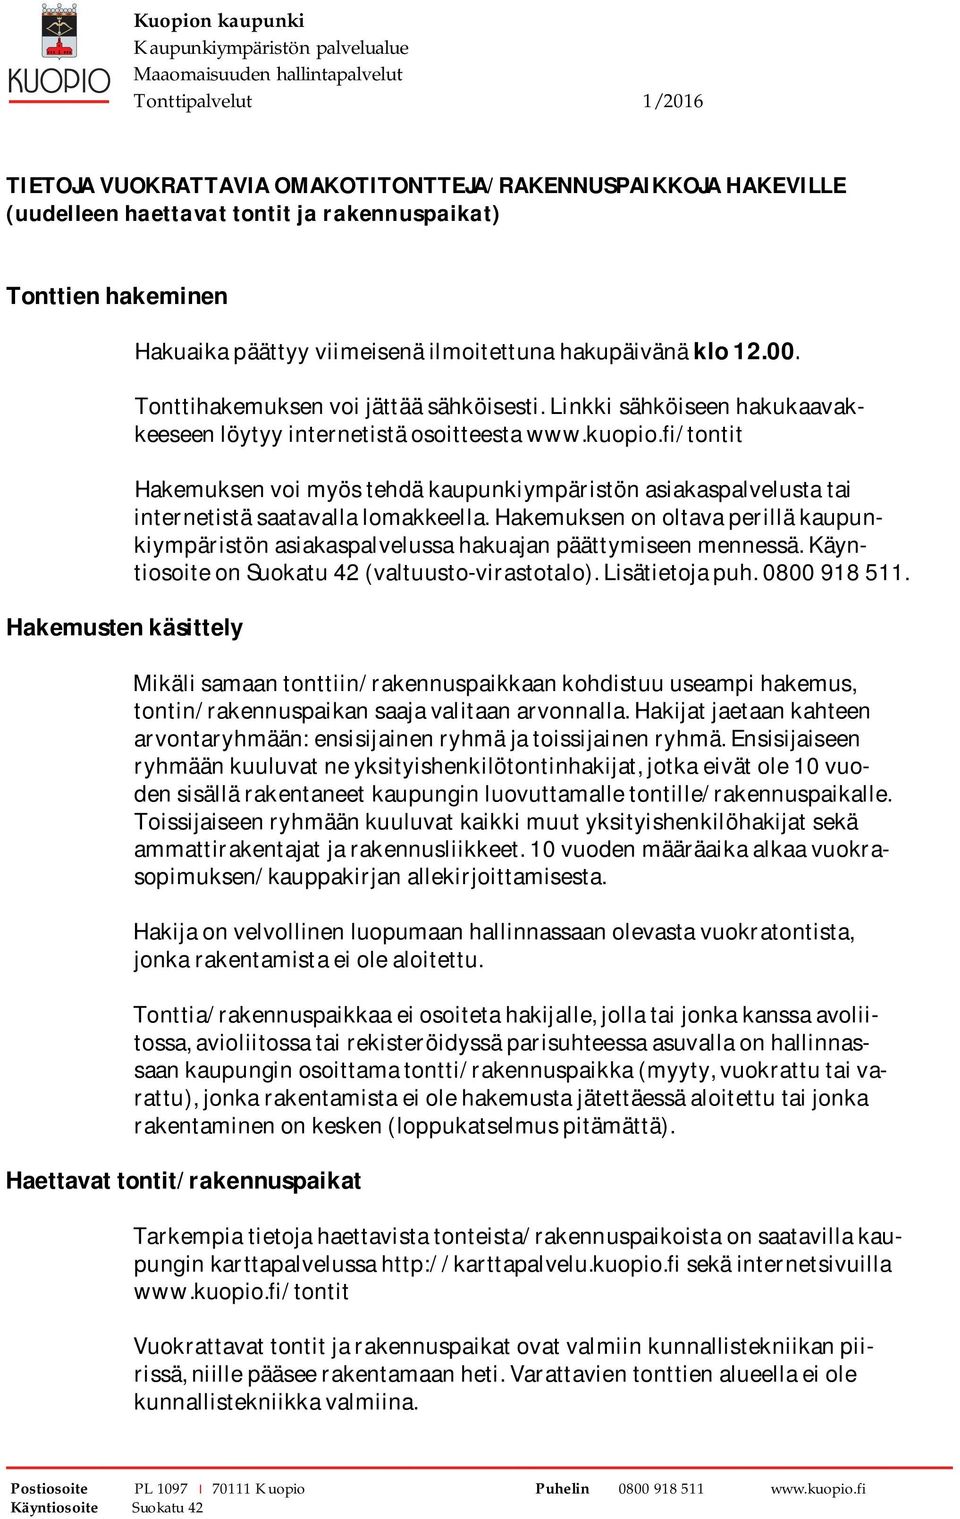 Linkkisähköiseenhakukaavakkeeseenlöytyyinternetistäosoitteestawww.kuopio.fi/tontit Hakemuksenvoimyöstehdäkaupunkiympäristönasiakaspalvelustatai internetistäsaatavallalomakkeella.